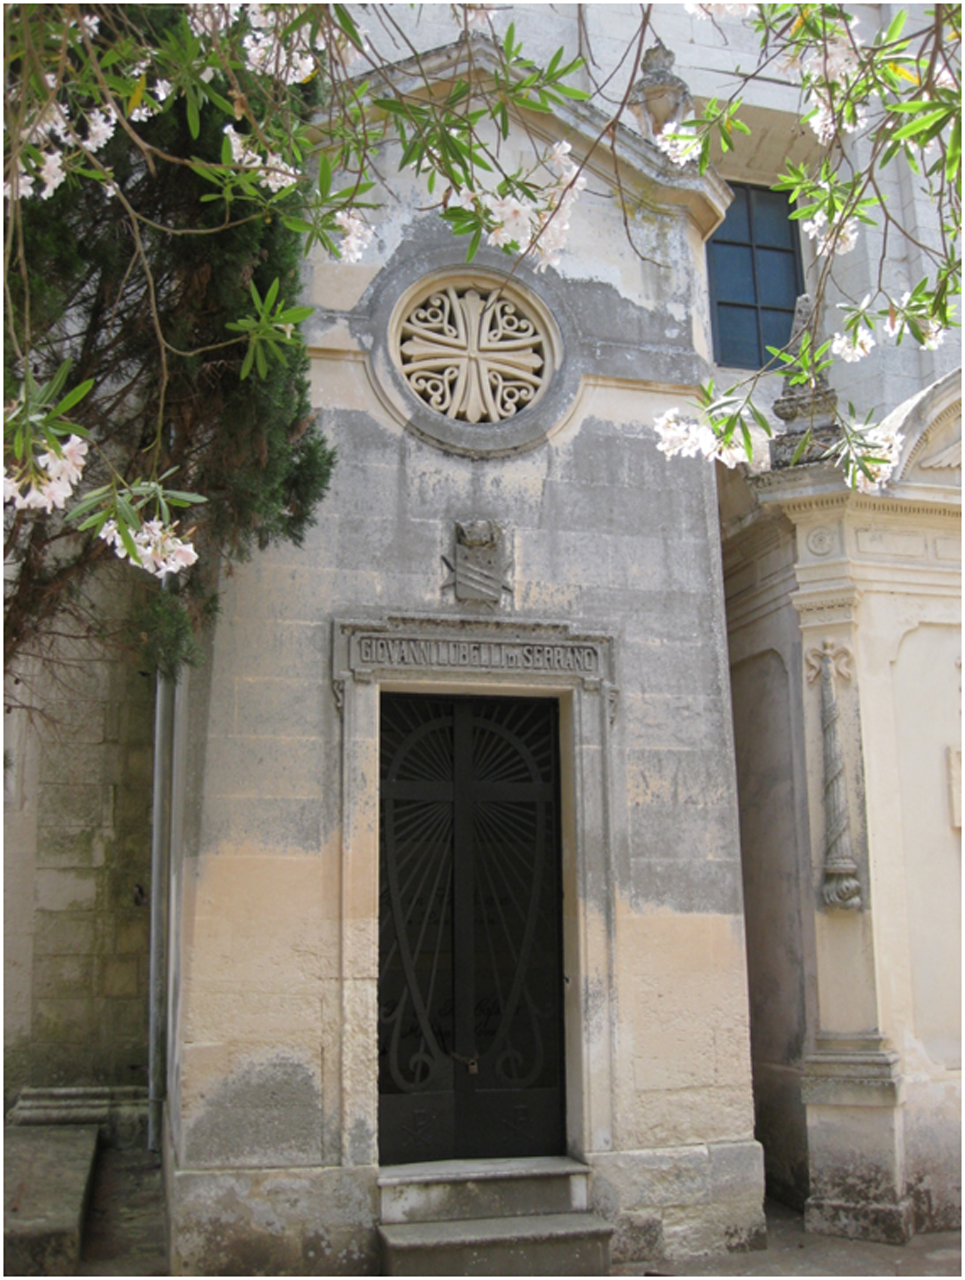 Giovanni Lubelli di Serrano (tomba, cappella) - Lecce (LE) 